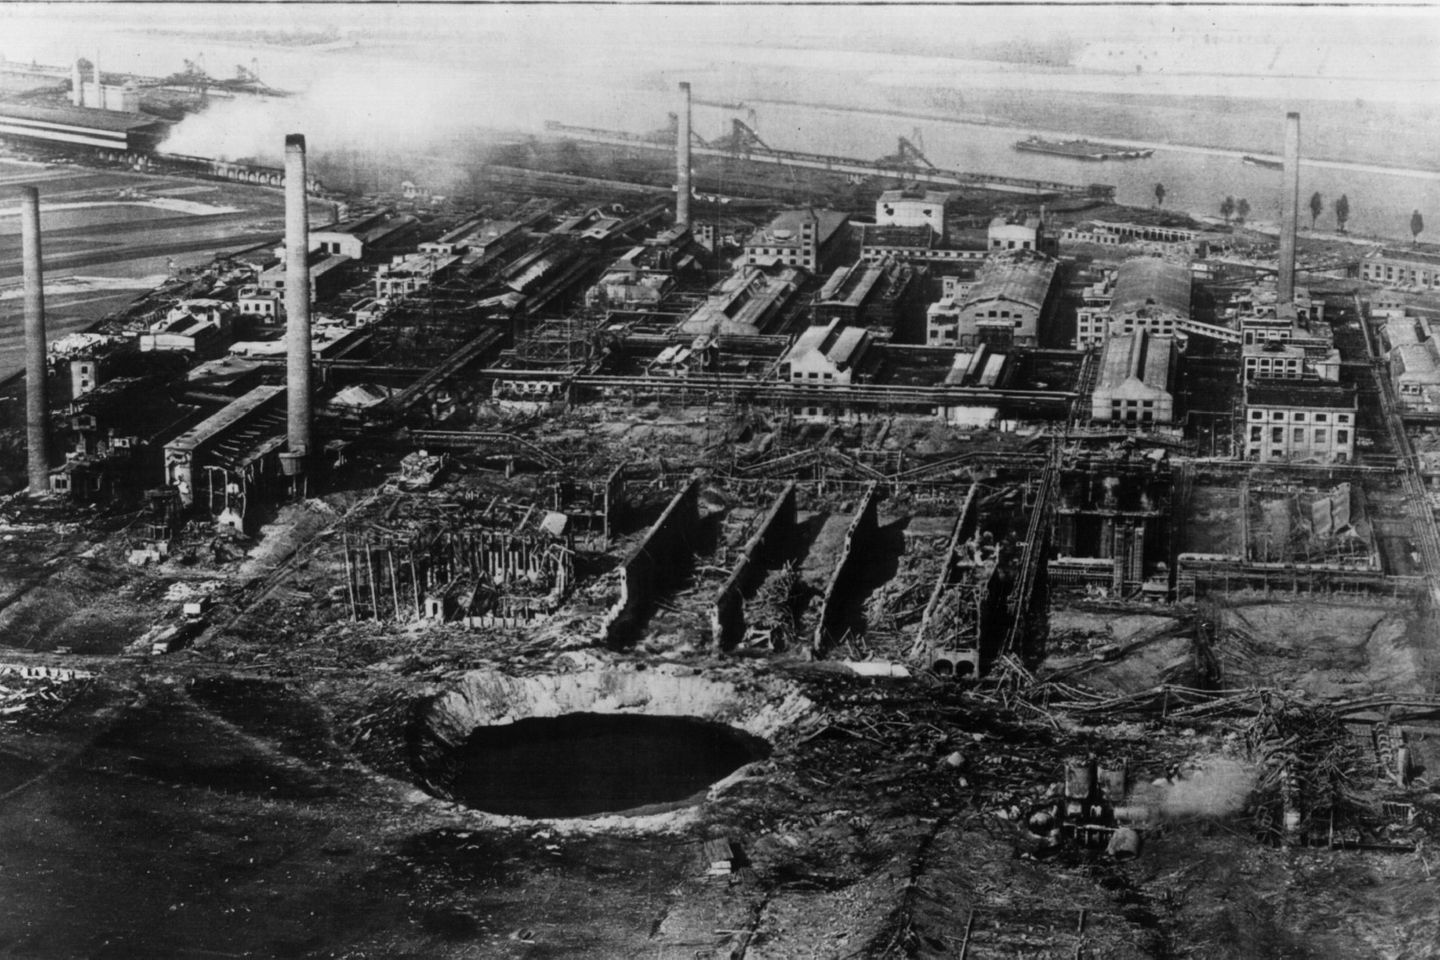 Am 21. September 1921 explodierte in dem BASF-Werk ein Silo mit Ammonsulfatsalpeter